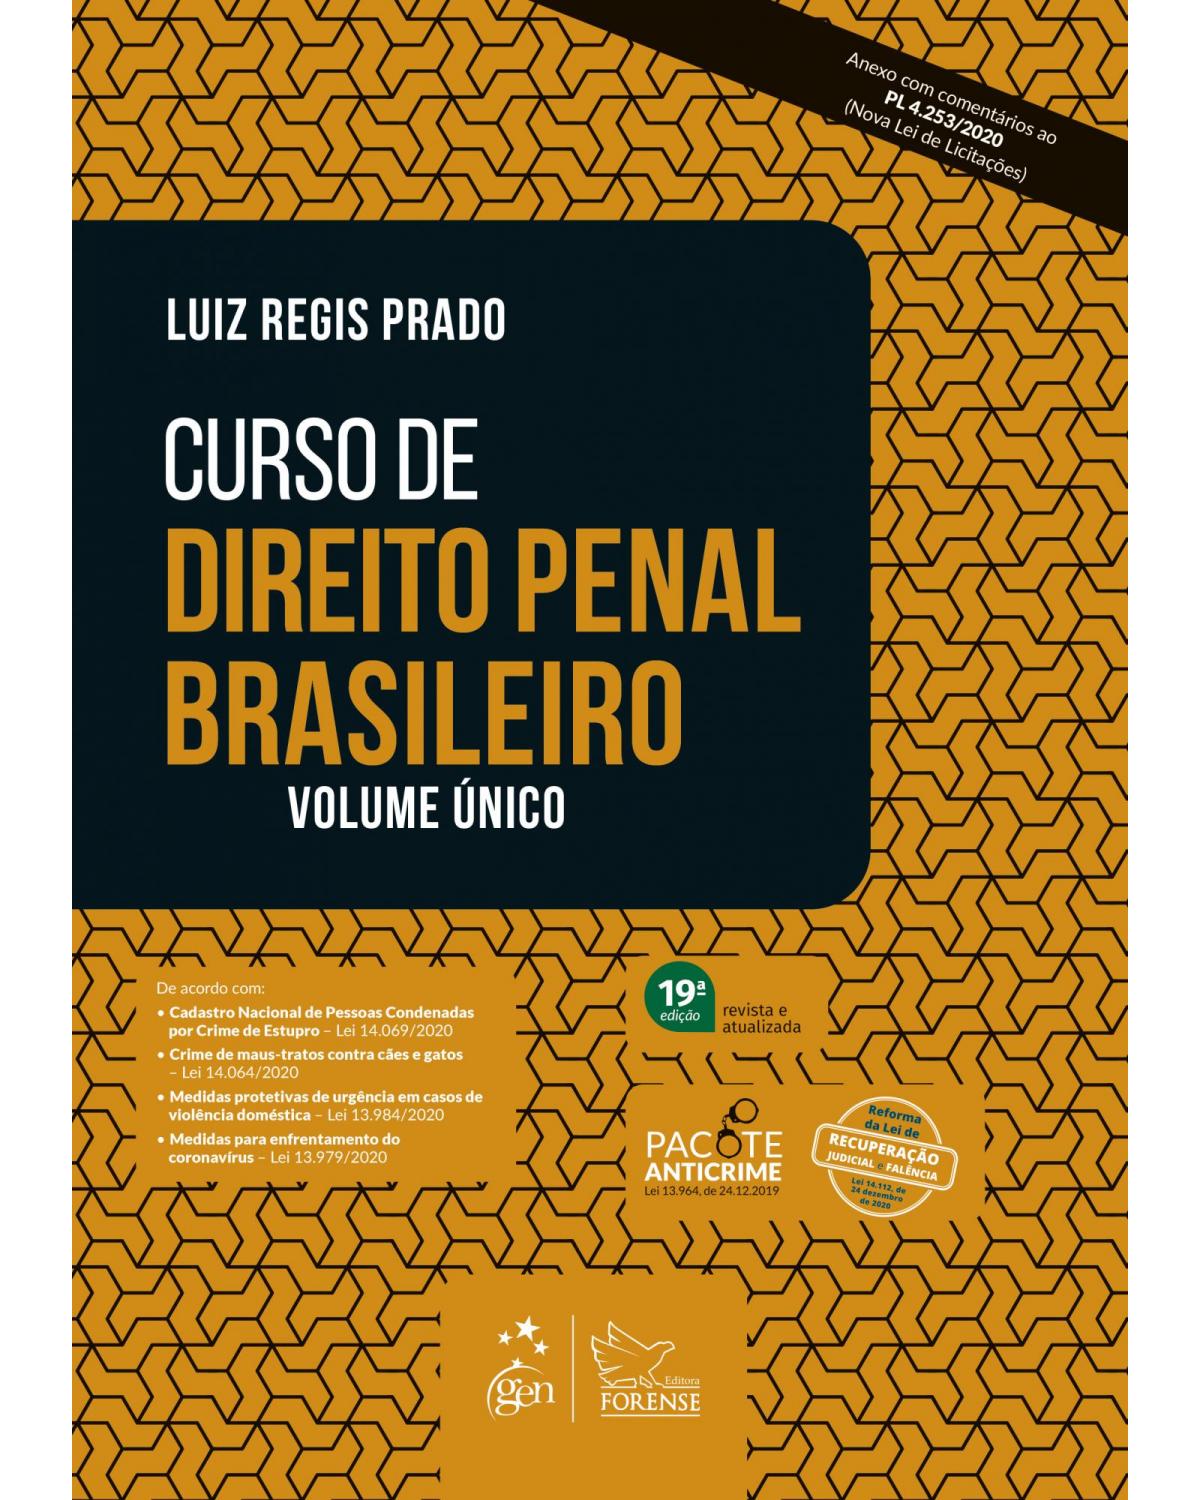 Curso de direito penal brasileiro - Volume único - 19ª Edição | 2021